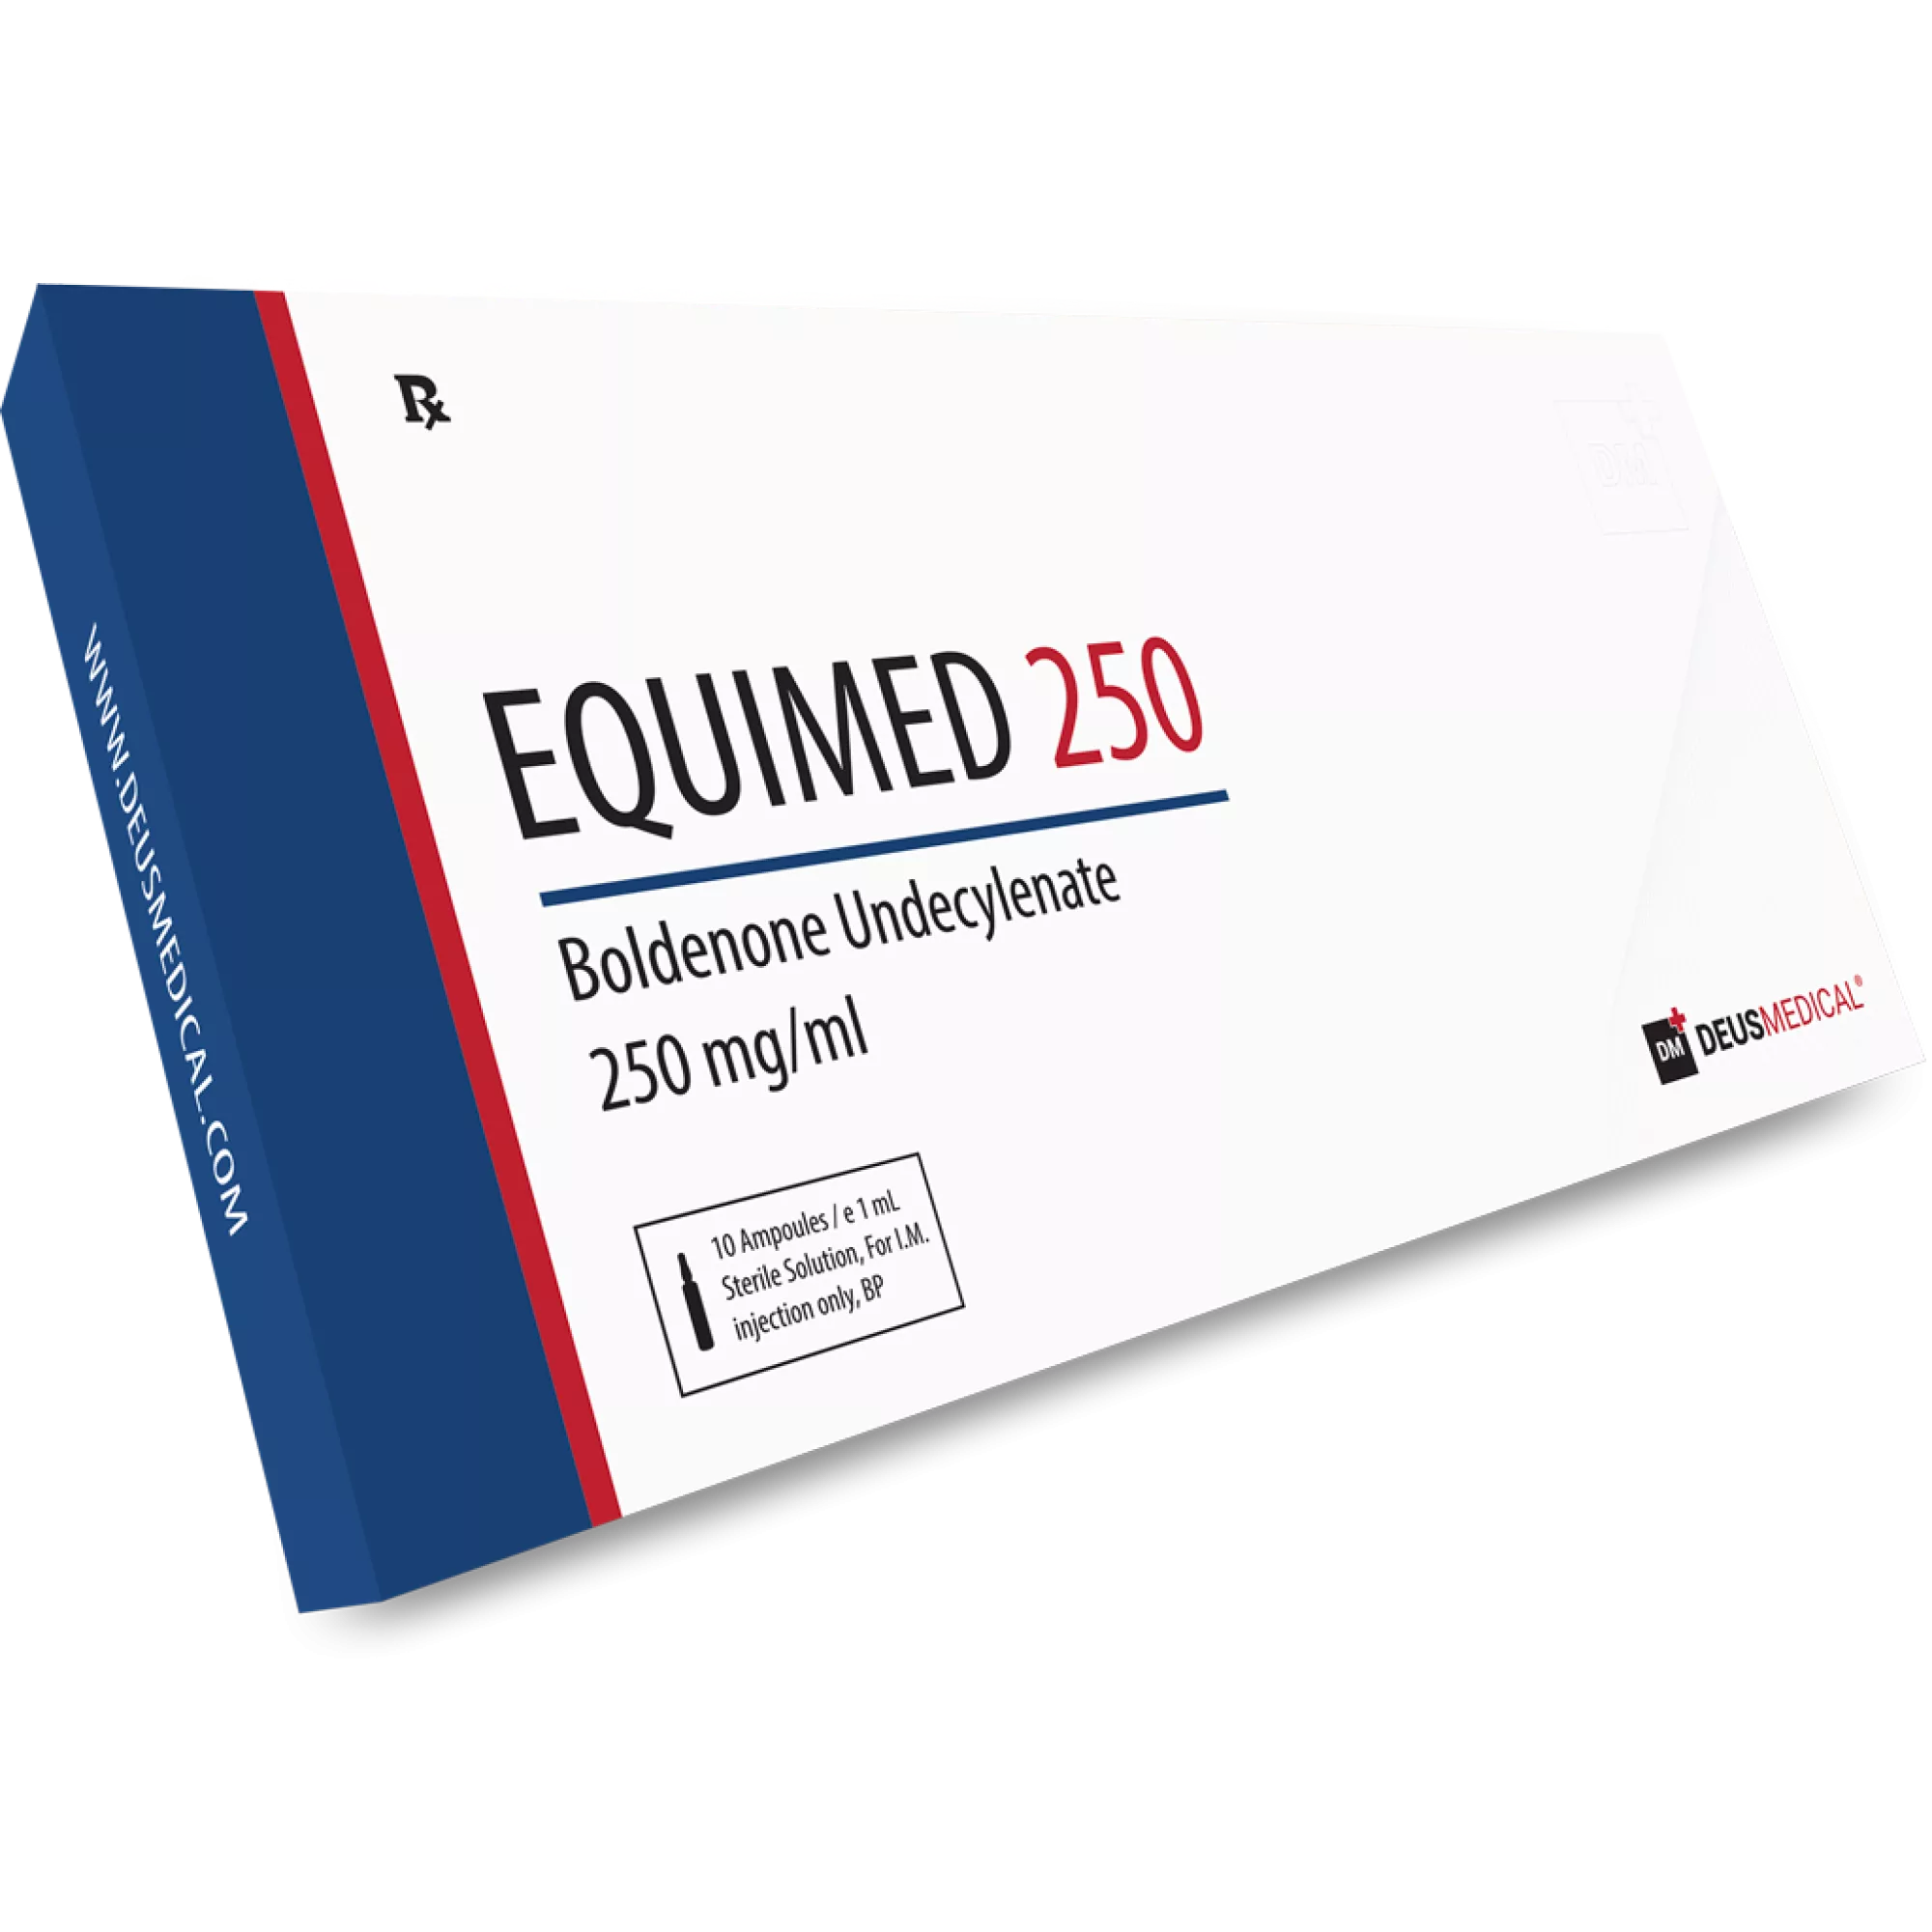 EQUIMED 250 (Boldenone undecylenate), Deus Medical, Köp steroider online - www.deuspower.shop